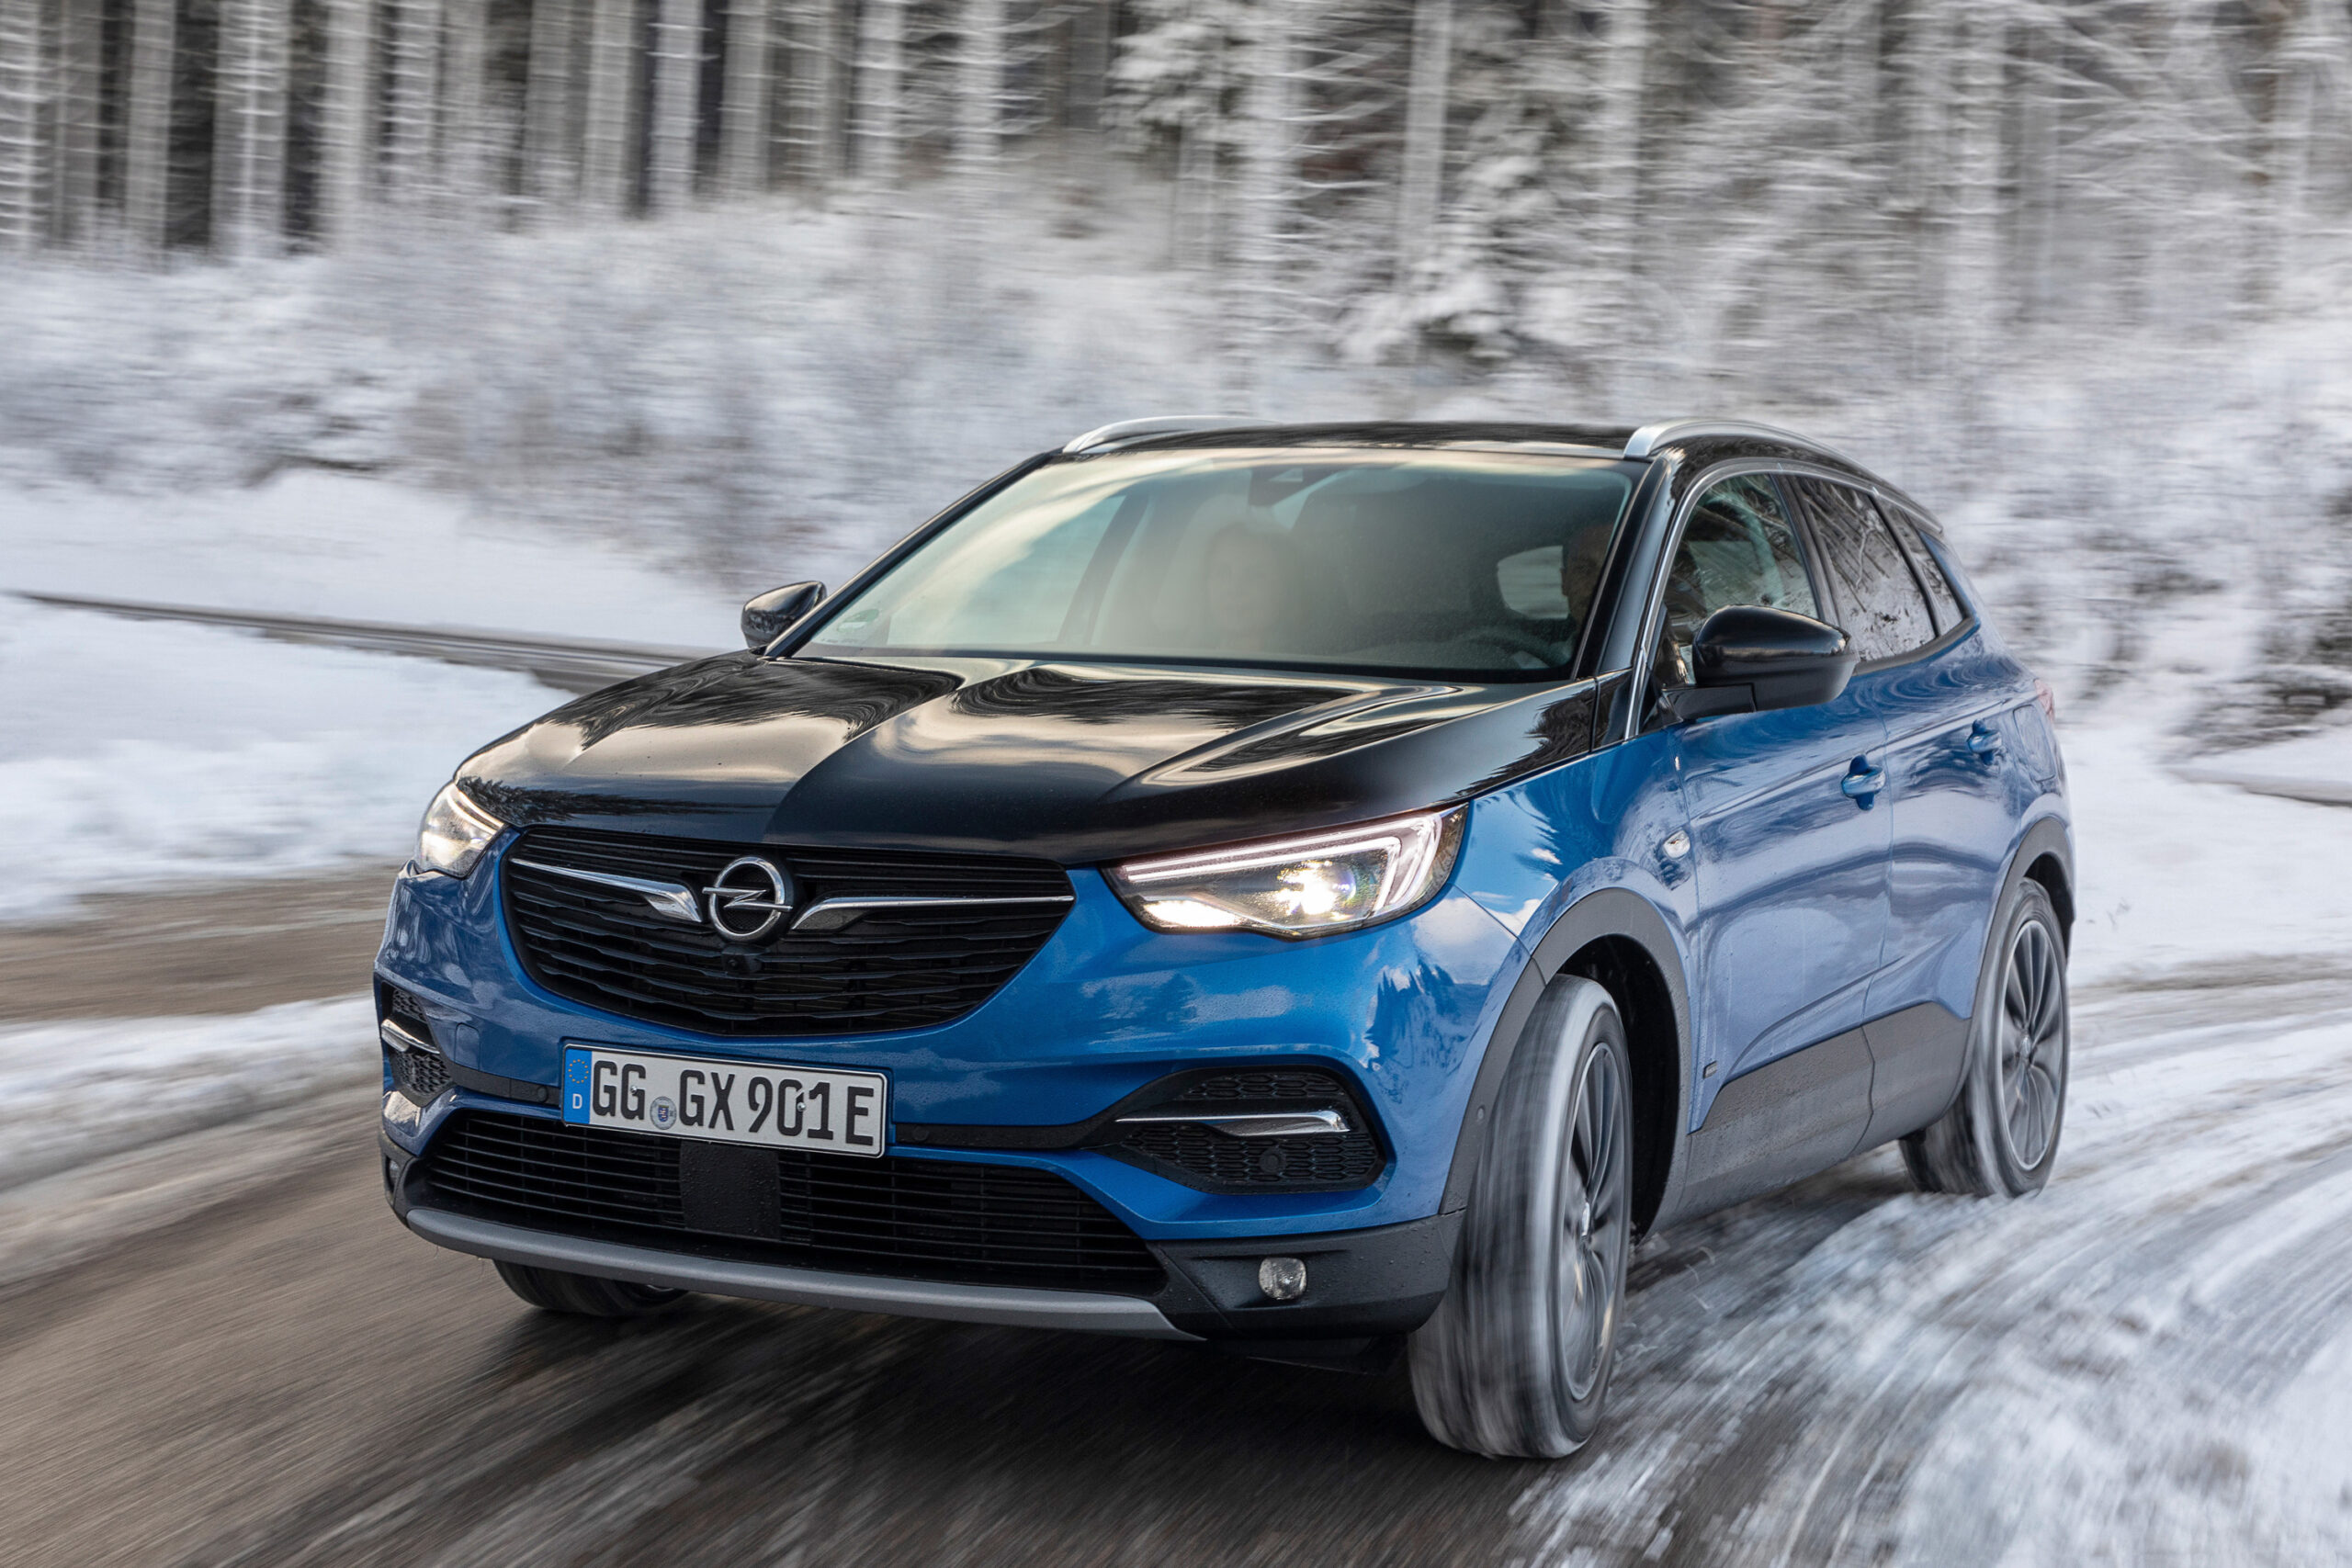 Opel tra sicurezza e comfort: ecco come si affronta il rigido inverno